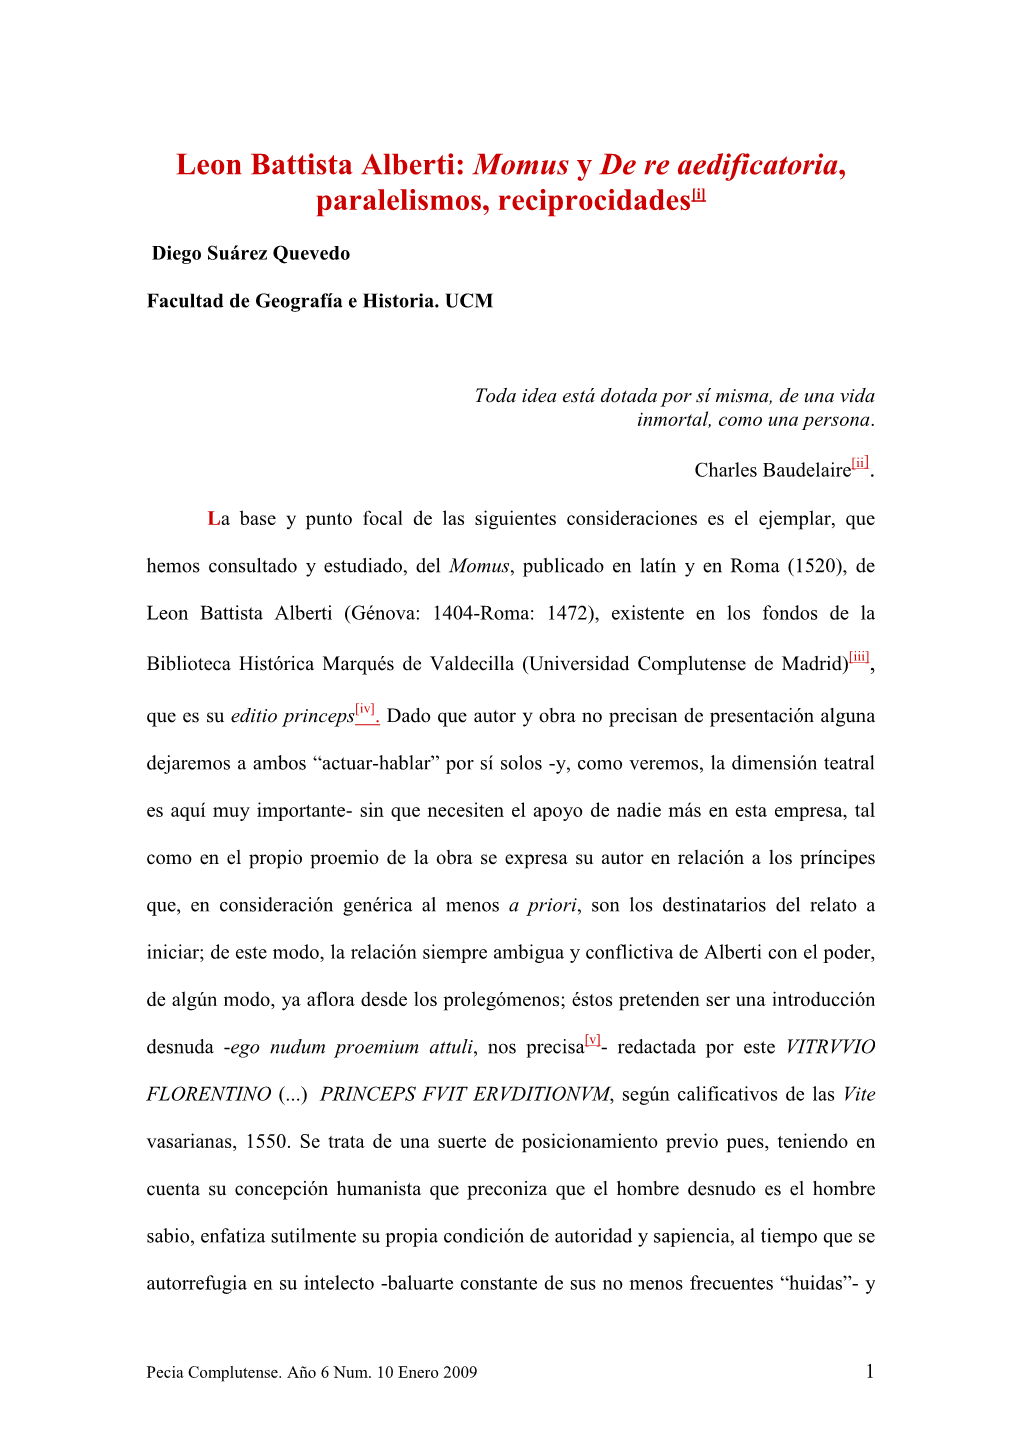 Leon Battista Alberti: Momus Y De Re Aedificatoria, Paralelismos